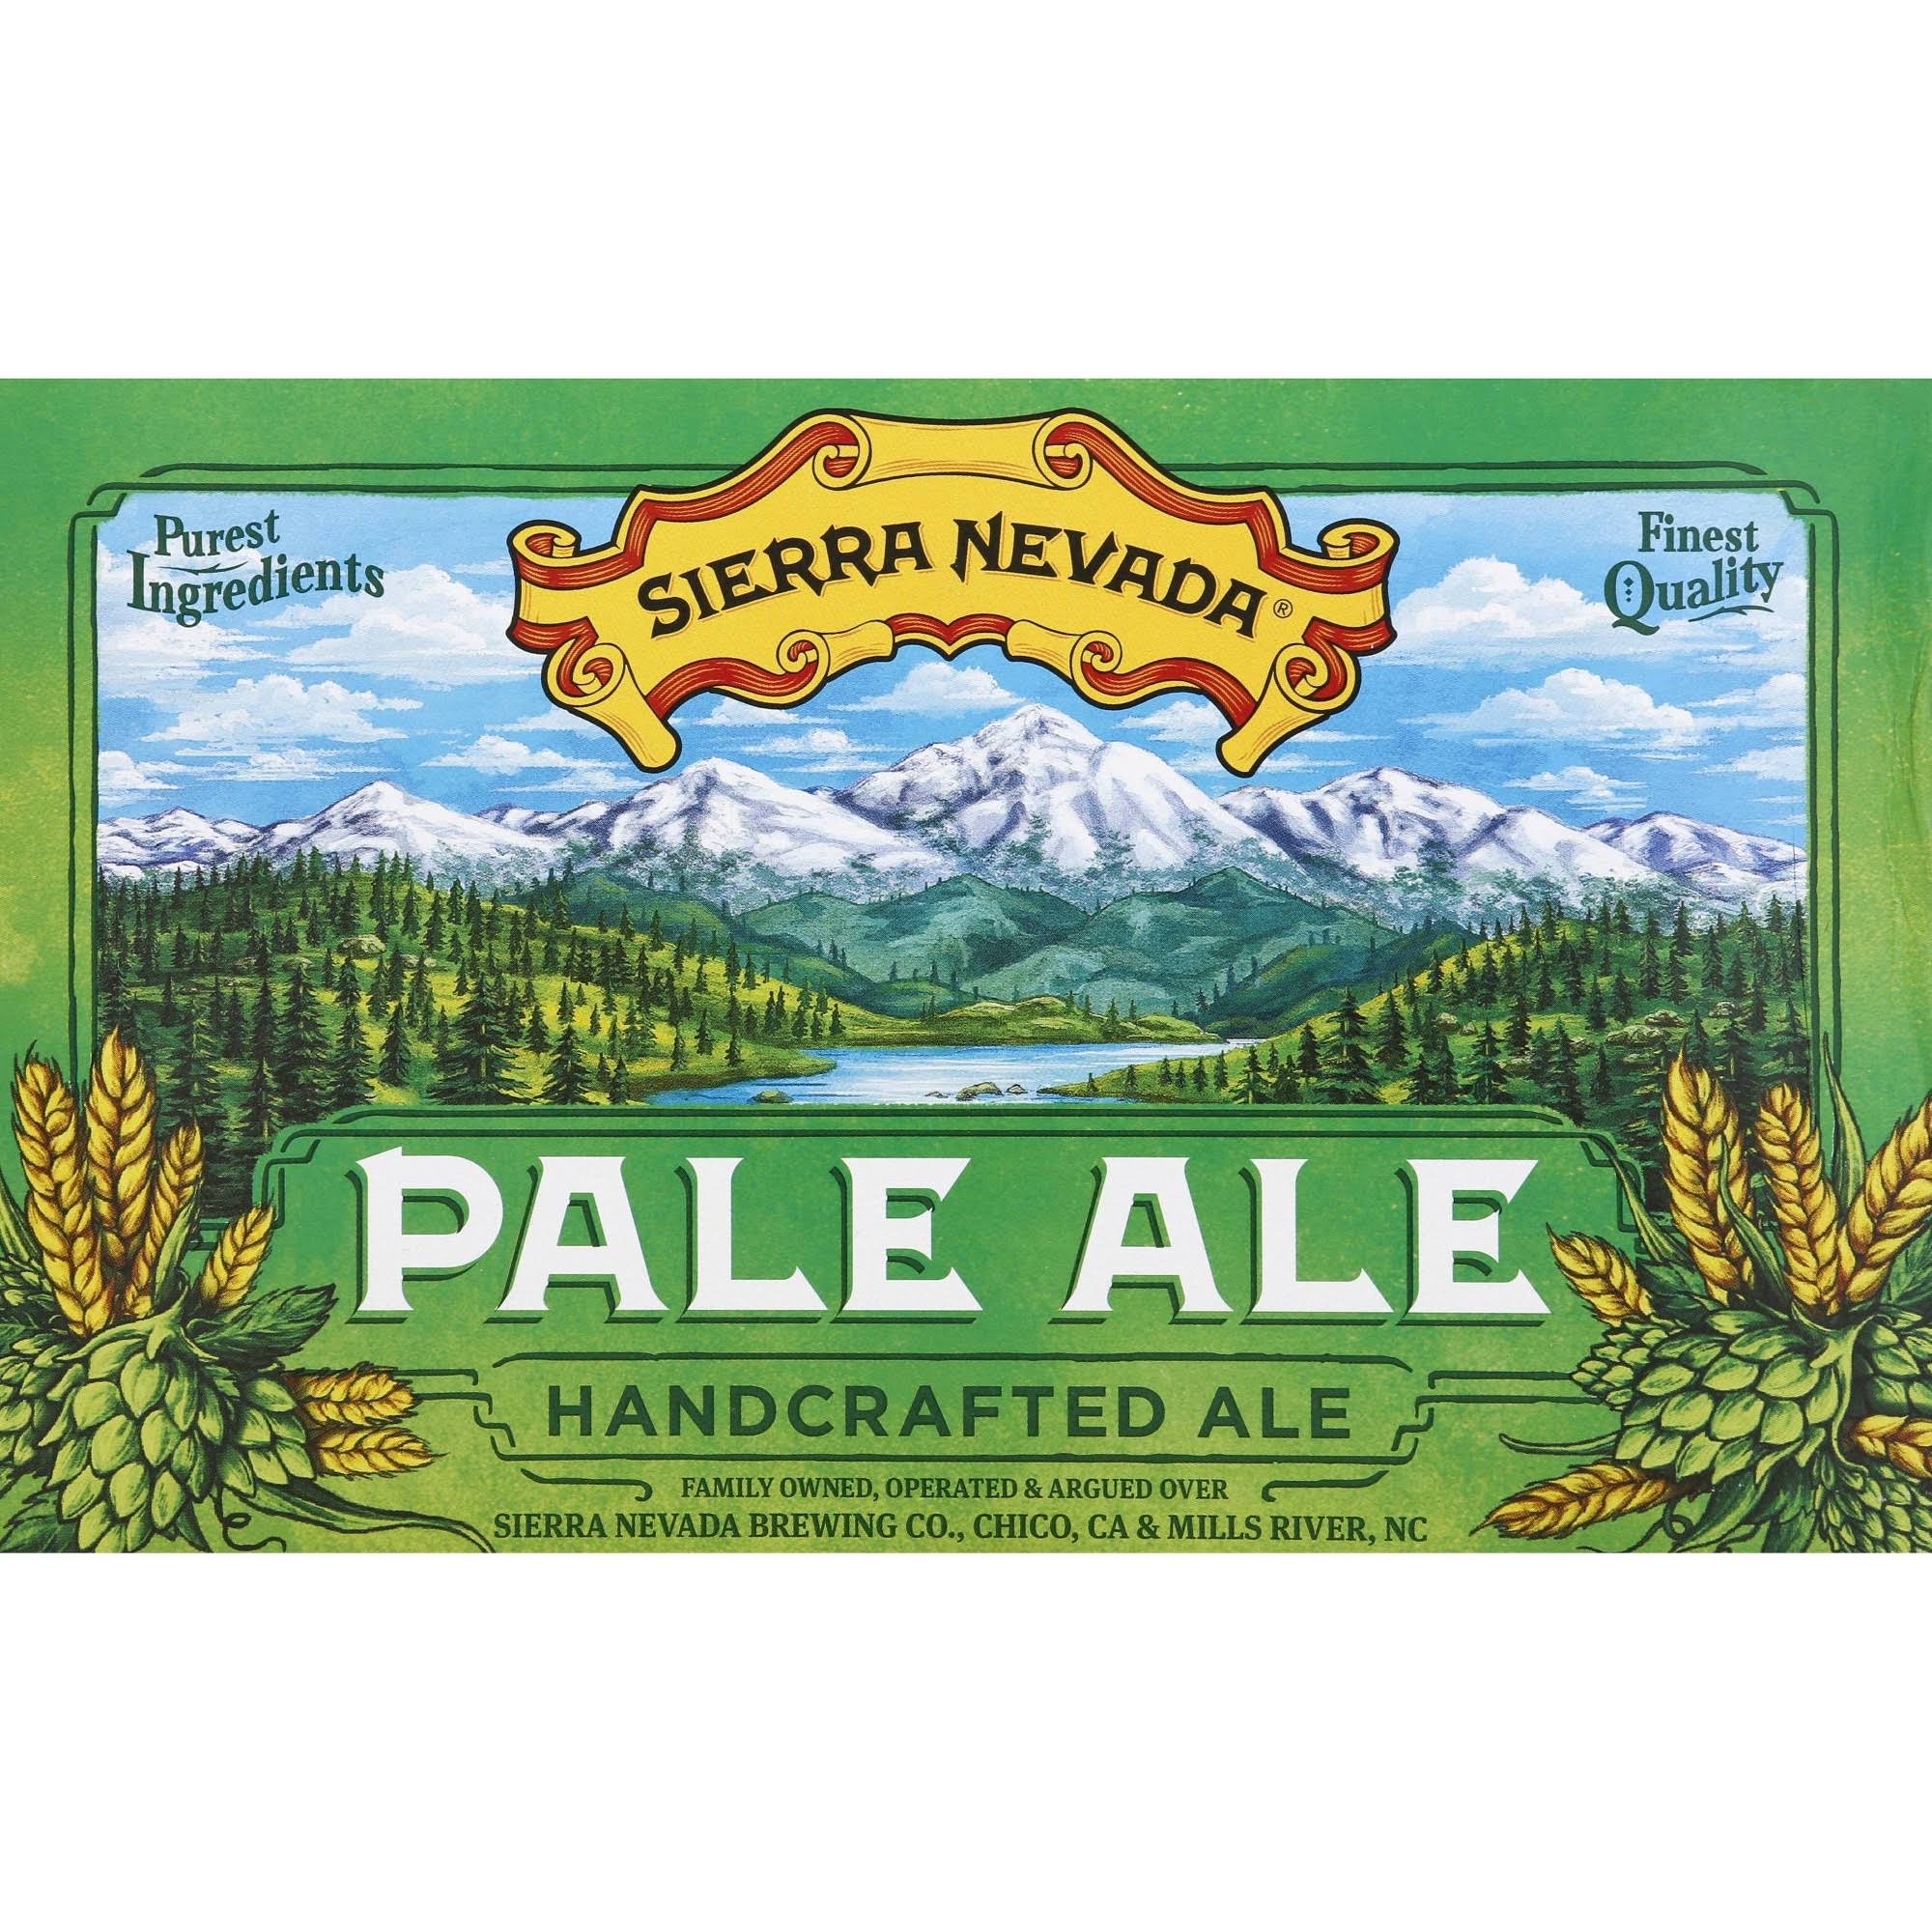 Sierra Nevada Beer, Pale Ale - 6 pack, 12 fl oz cans